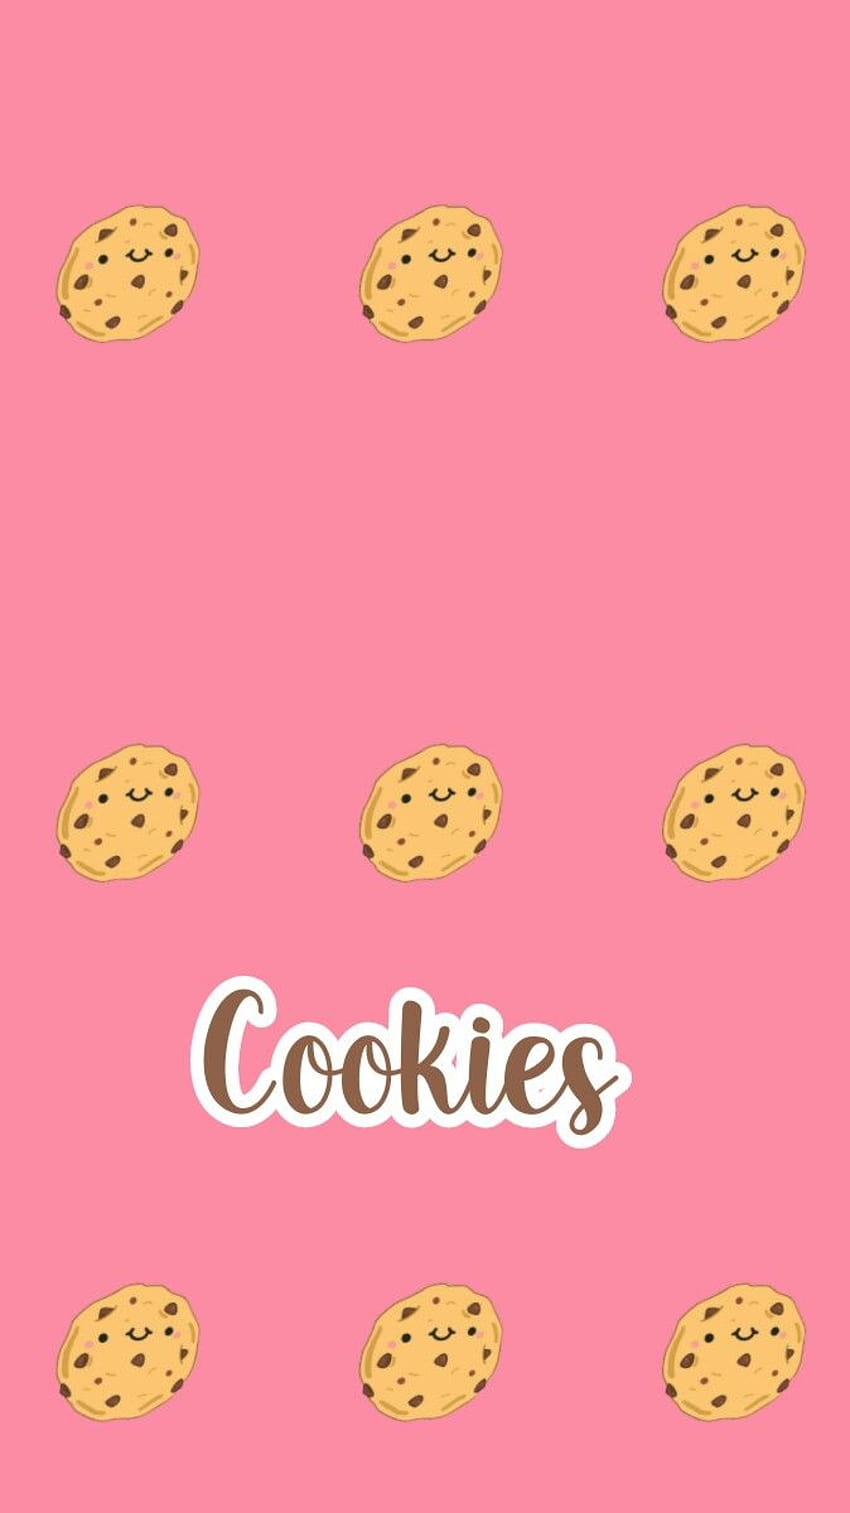 De Cookies, aesthetic cookies HD phone wallpaper | Pxfuel